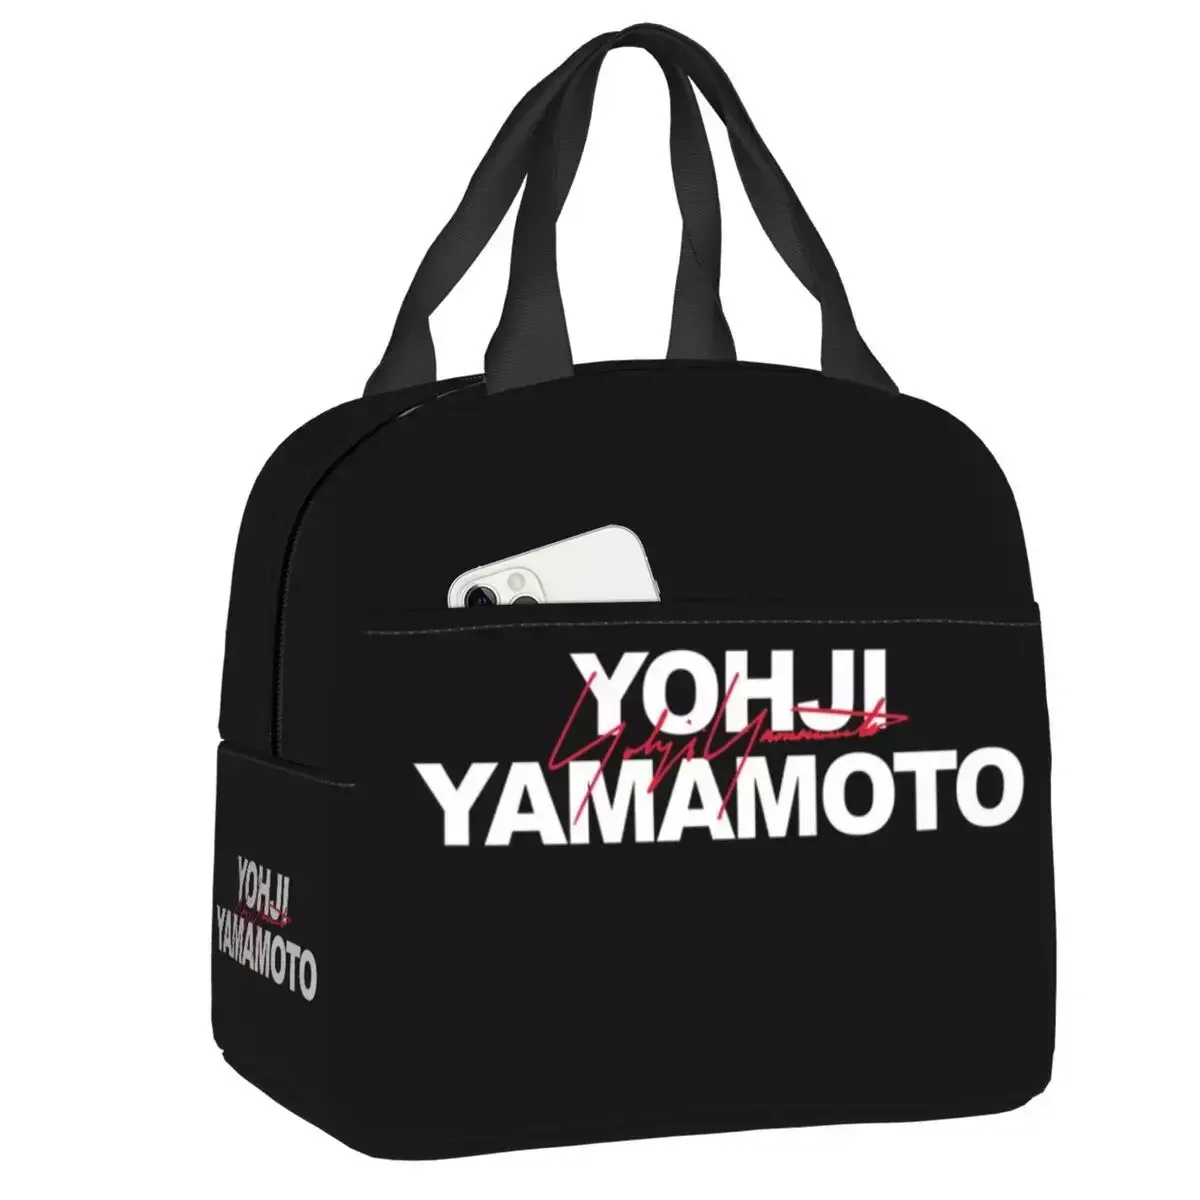 

2023 новая изолированная сумка-тоут для ланча Yohji Yamamoto для женщин, многоразовый термоохладитель, коробка для бенто, для работы, школы, путешествий